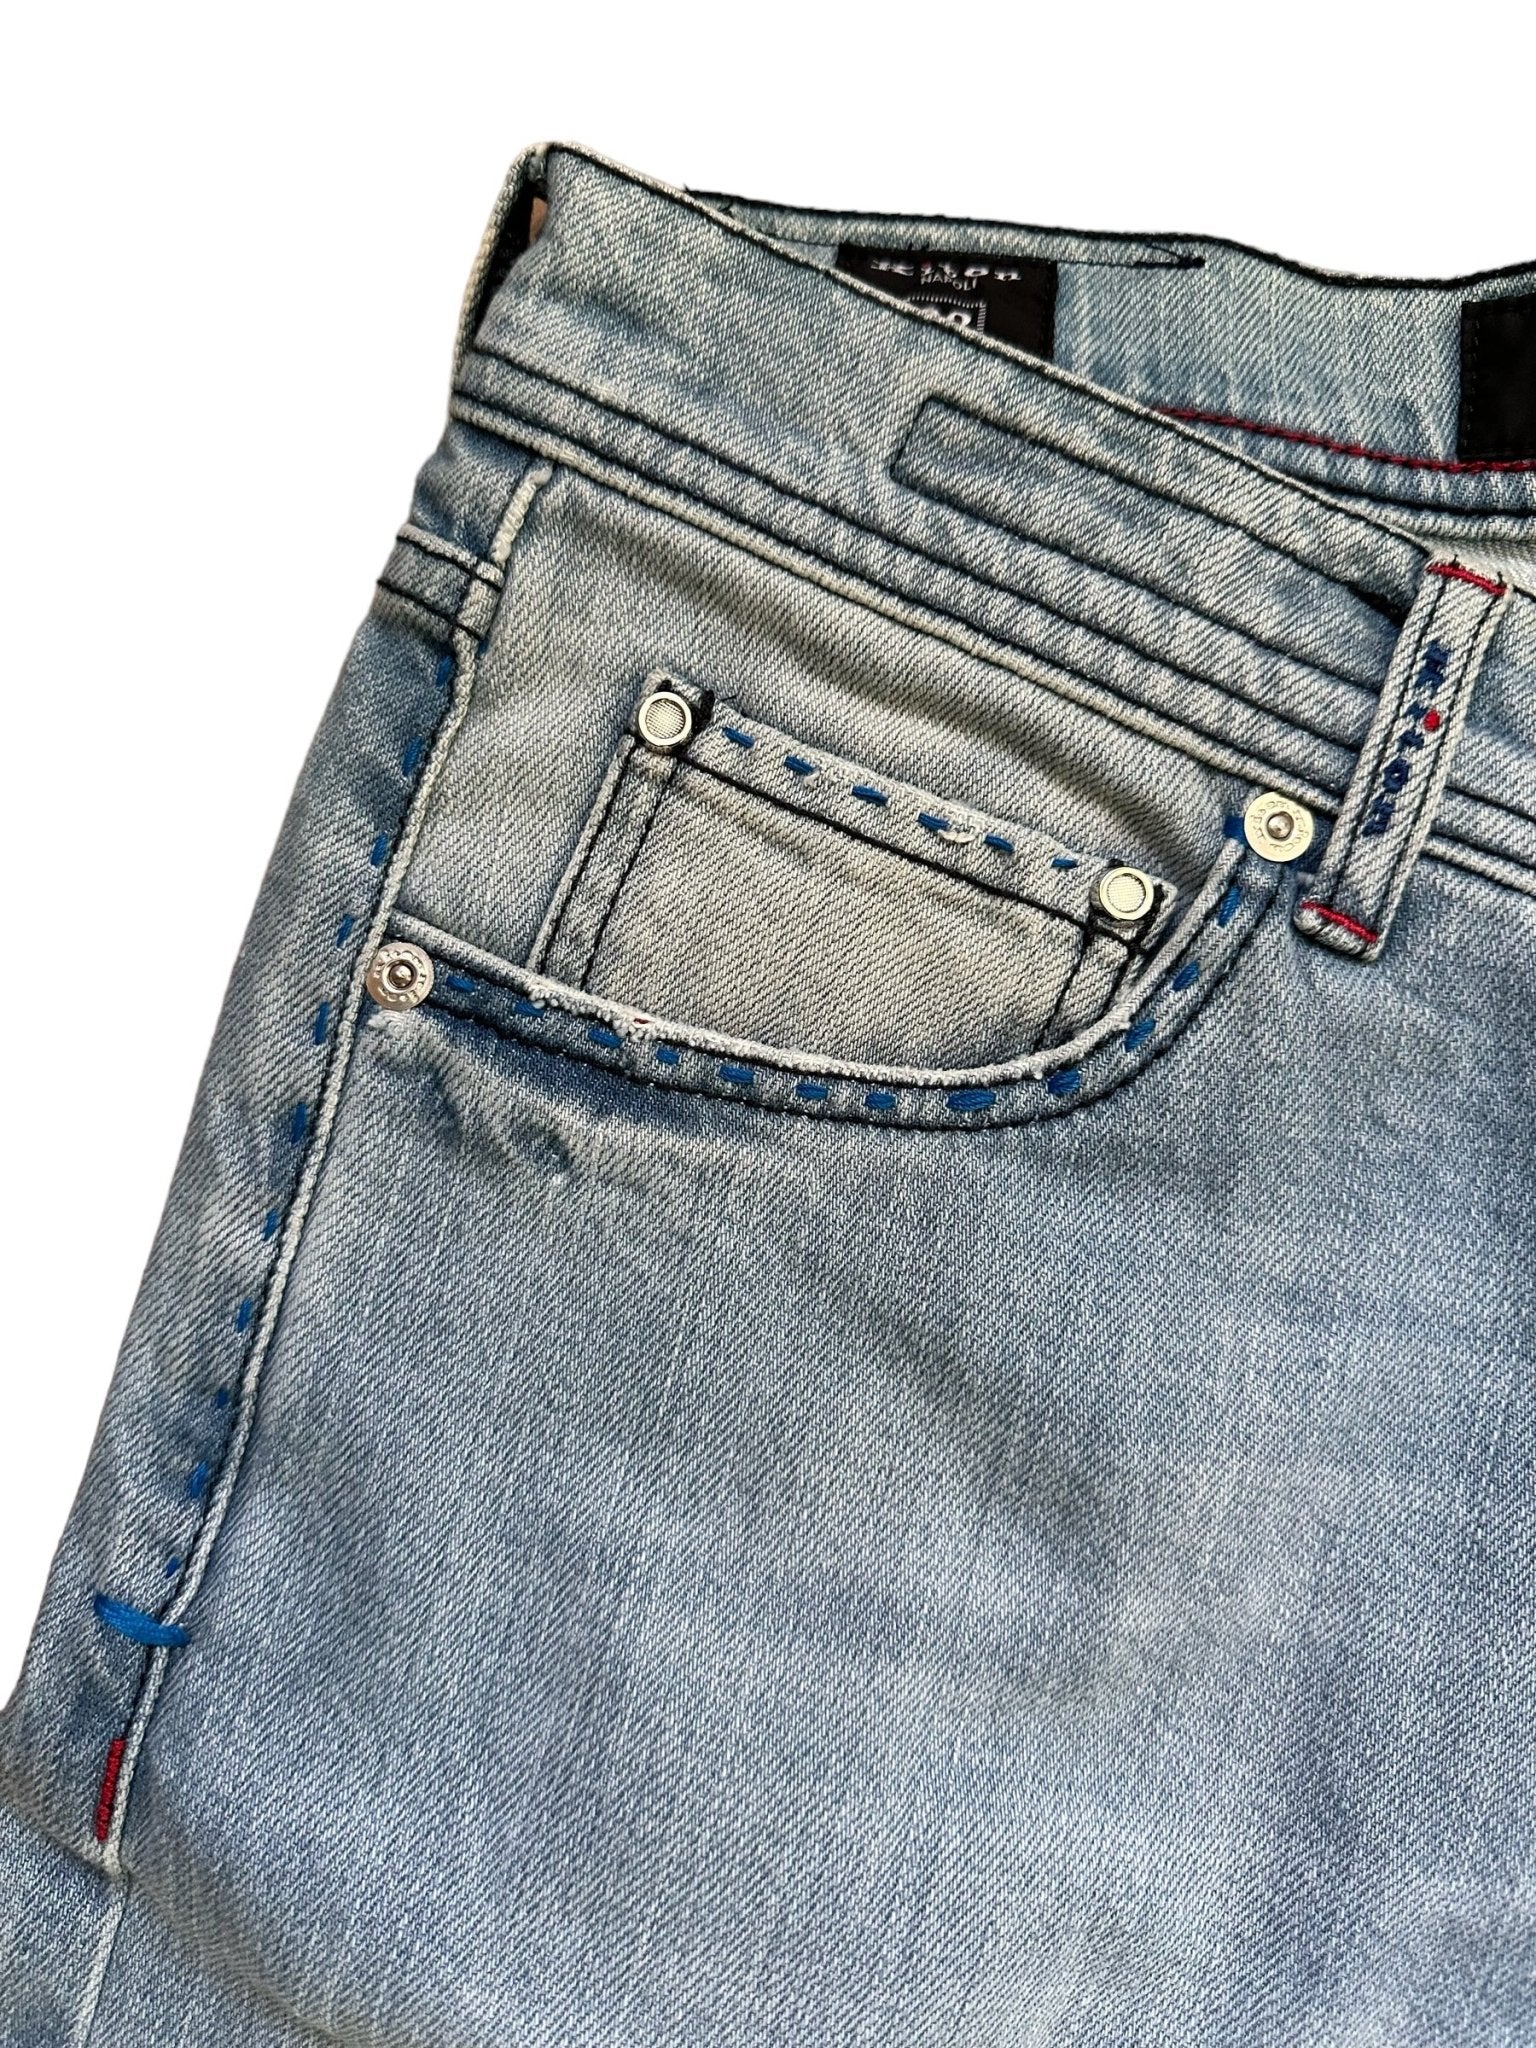 Kiton Jeans Slim washed - 24/7 Clothing